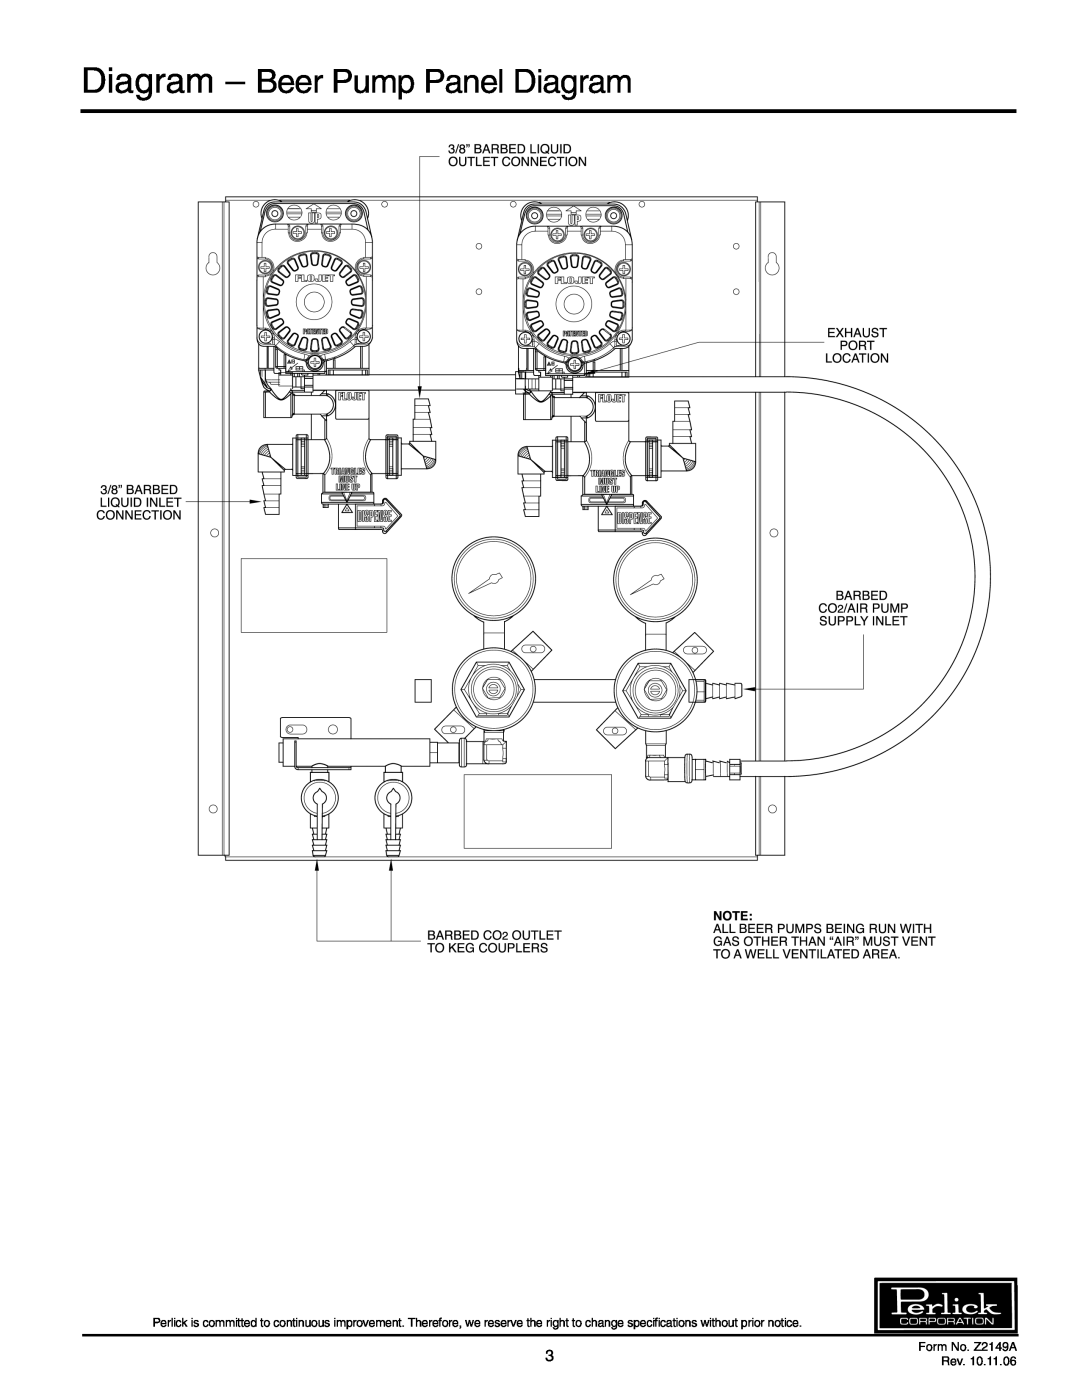 Perlick 66134-3, 66134-1, 66134-2, 66134-4 manual Diagram – Beer Pump Panel Diagram, Form No. Z2149A, Rev 